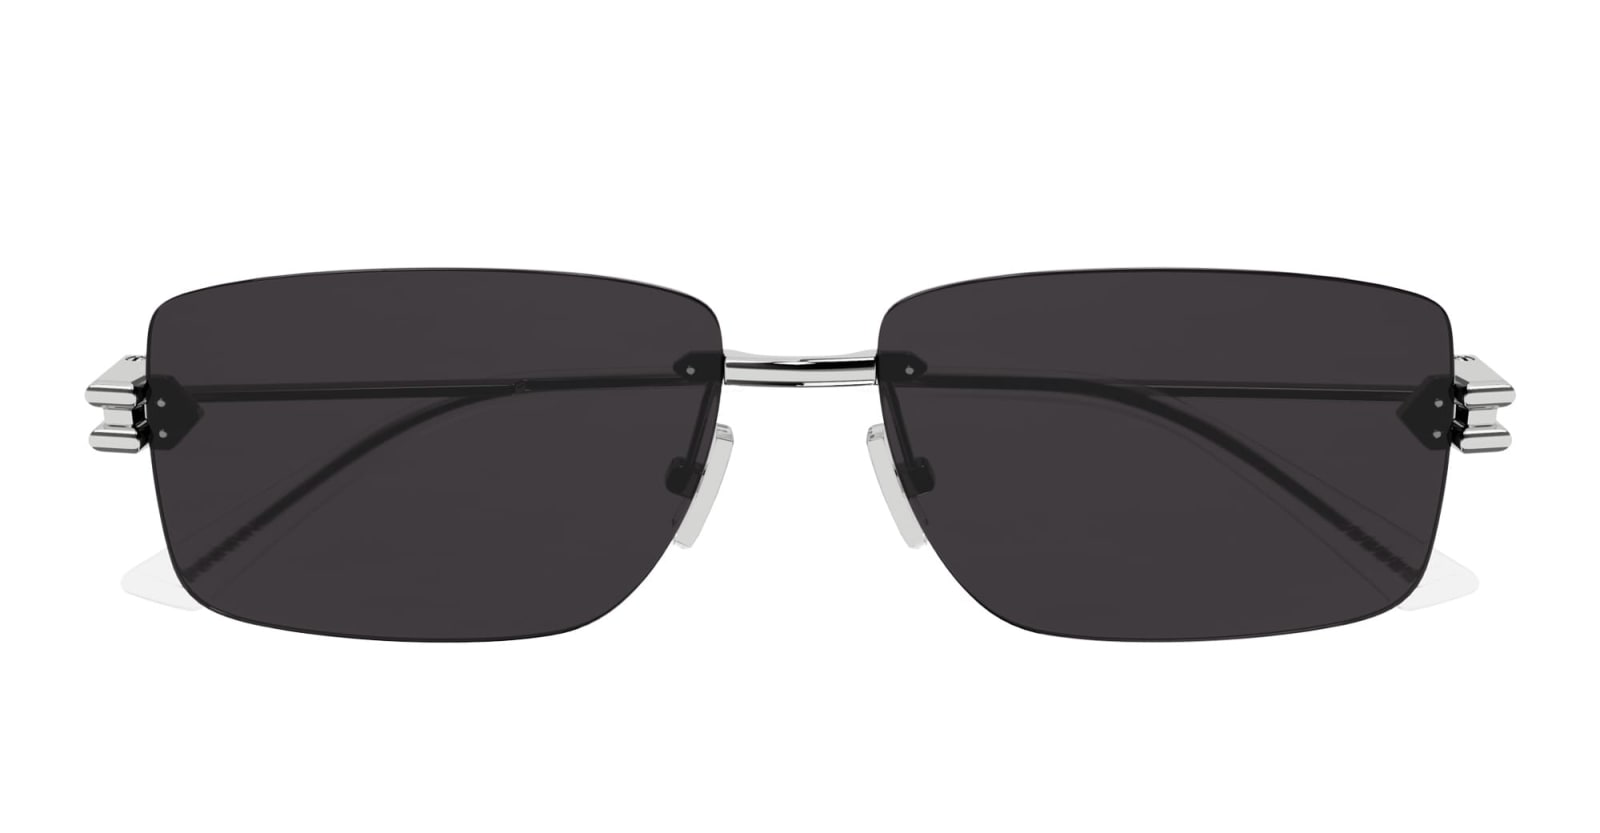 Bv1126s-003 - Silver Sunglasses